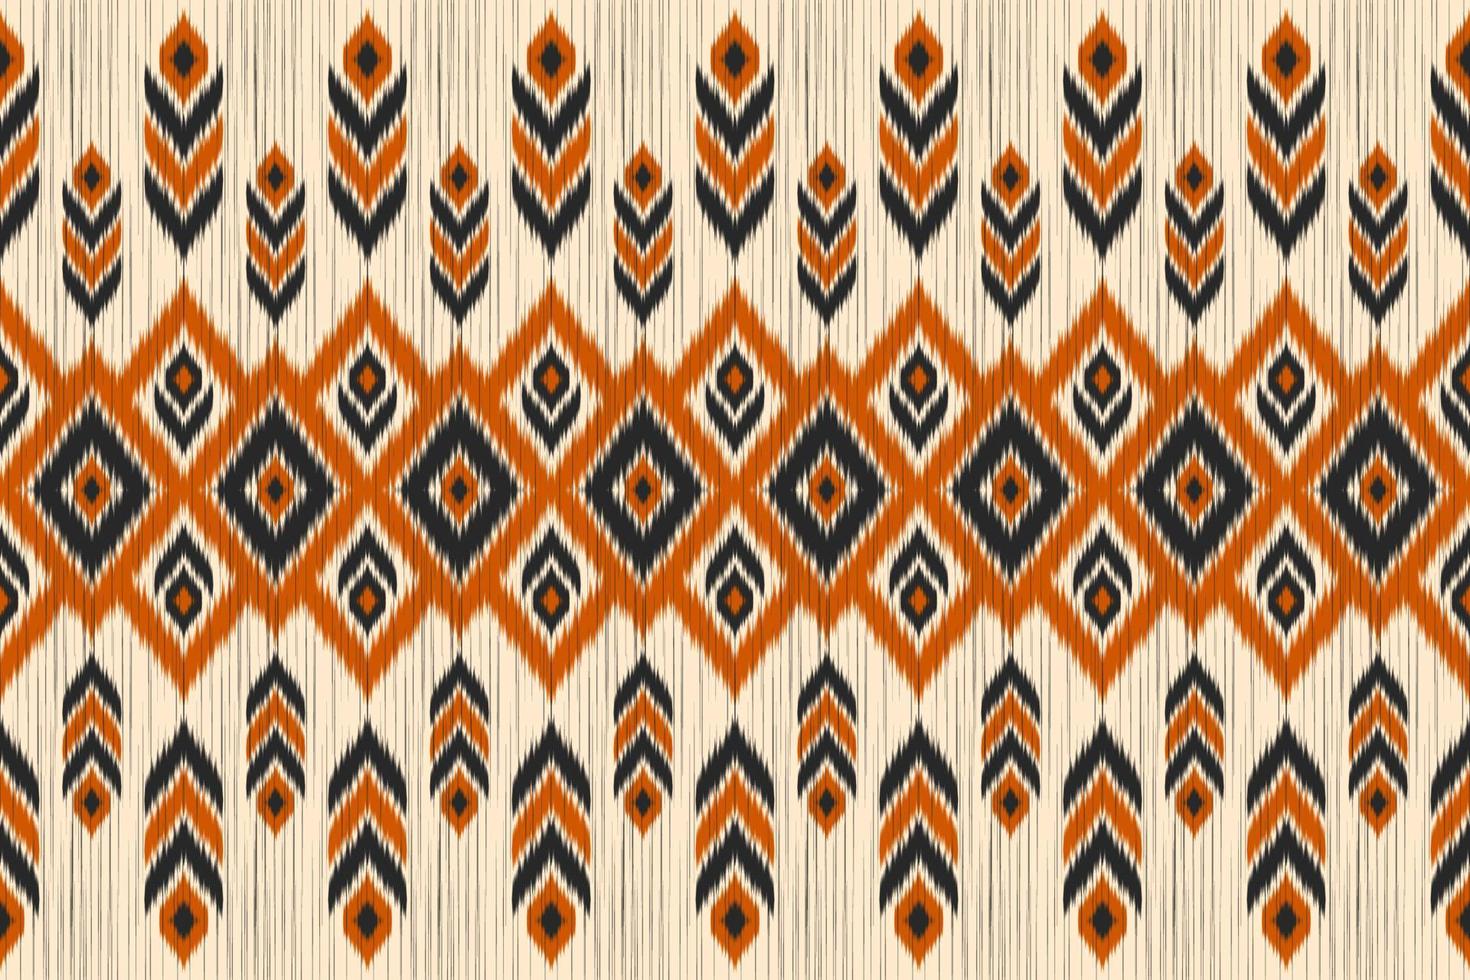 arte étnica ikat do tapete. padrão sem emenda em tribal. vetor